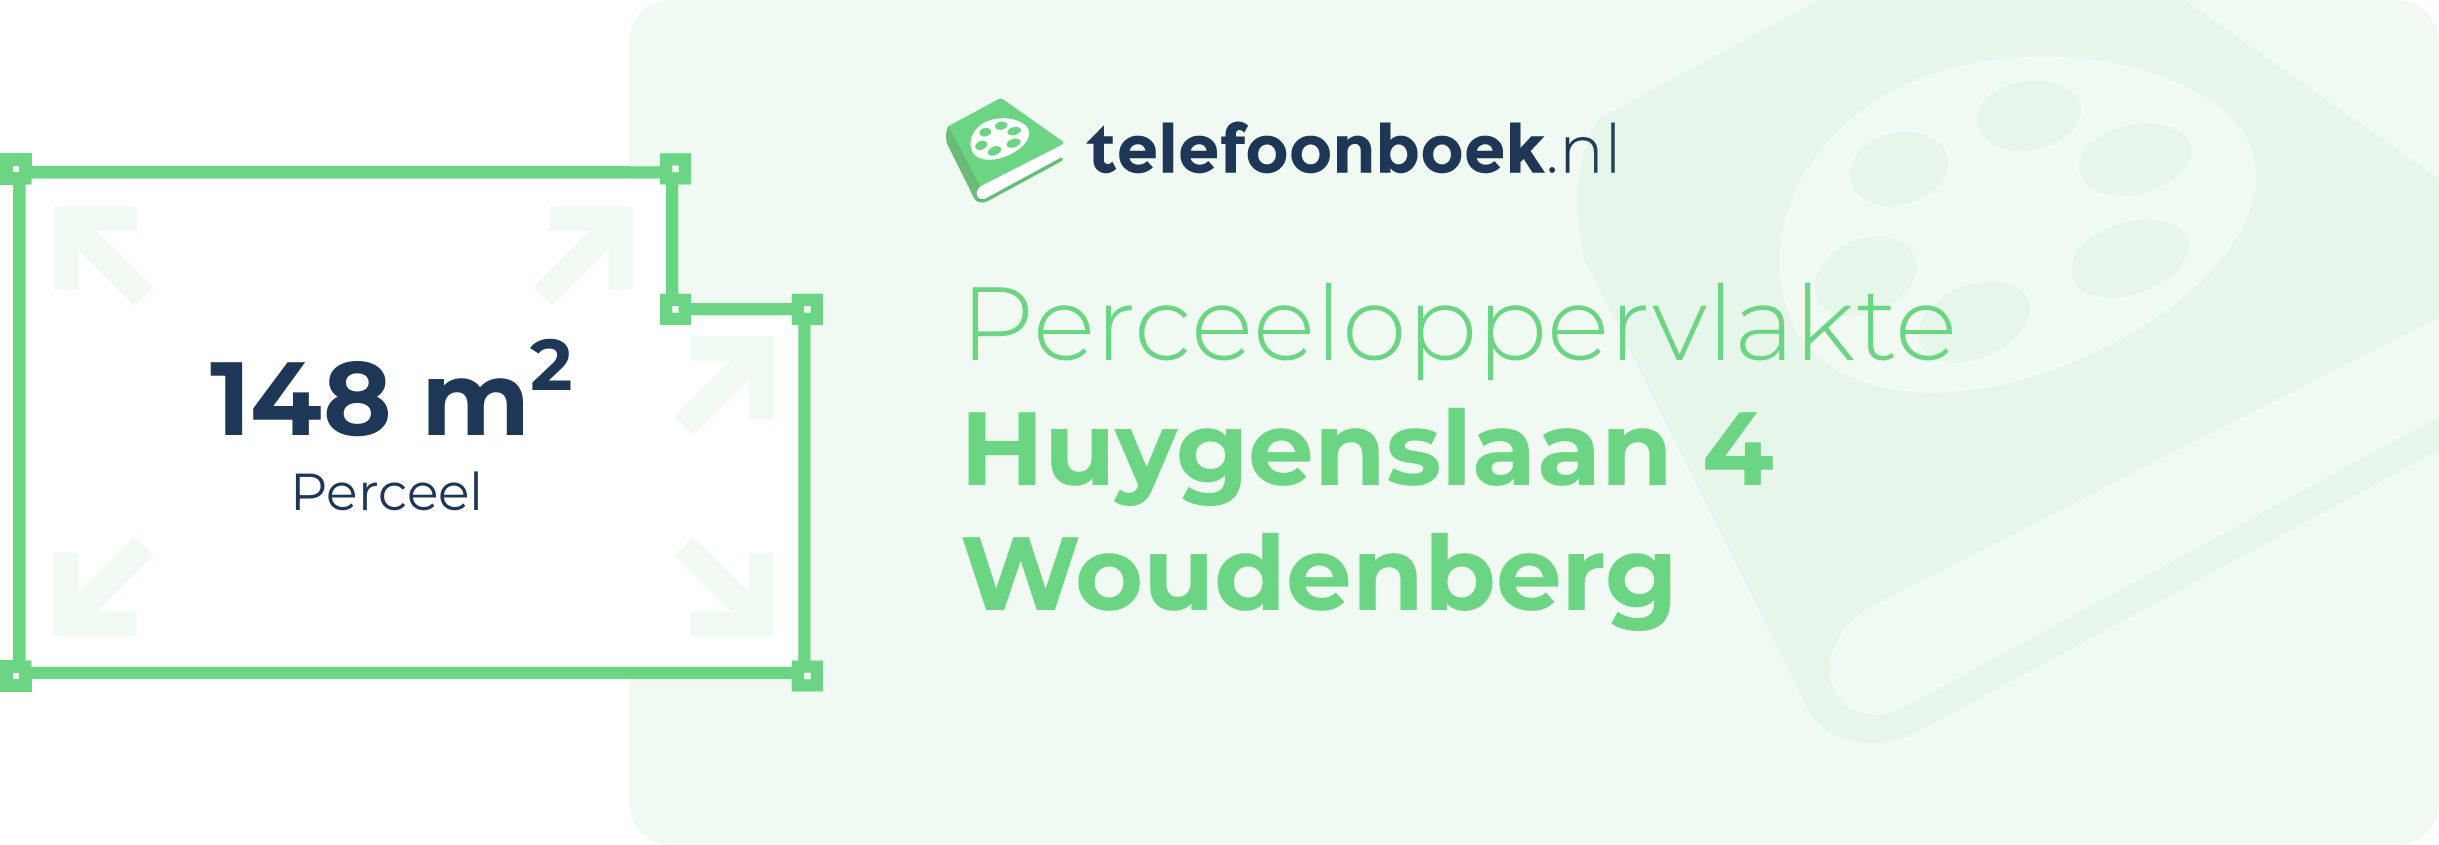 Perceeloppervlakte Huygenslaan 4 Woudenberg